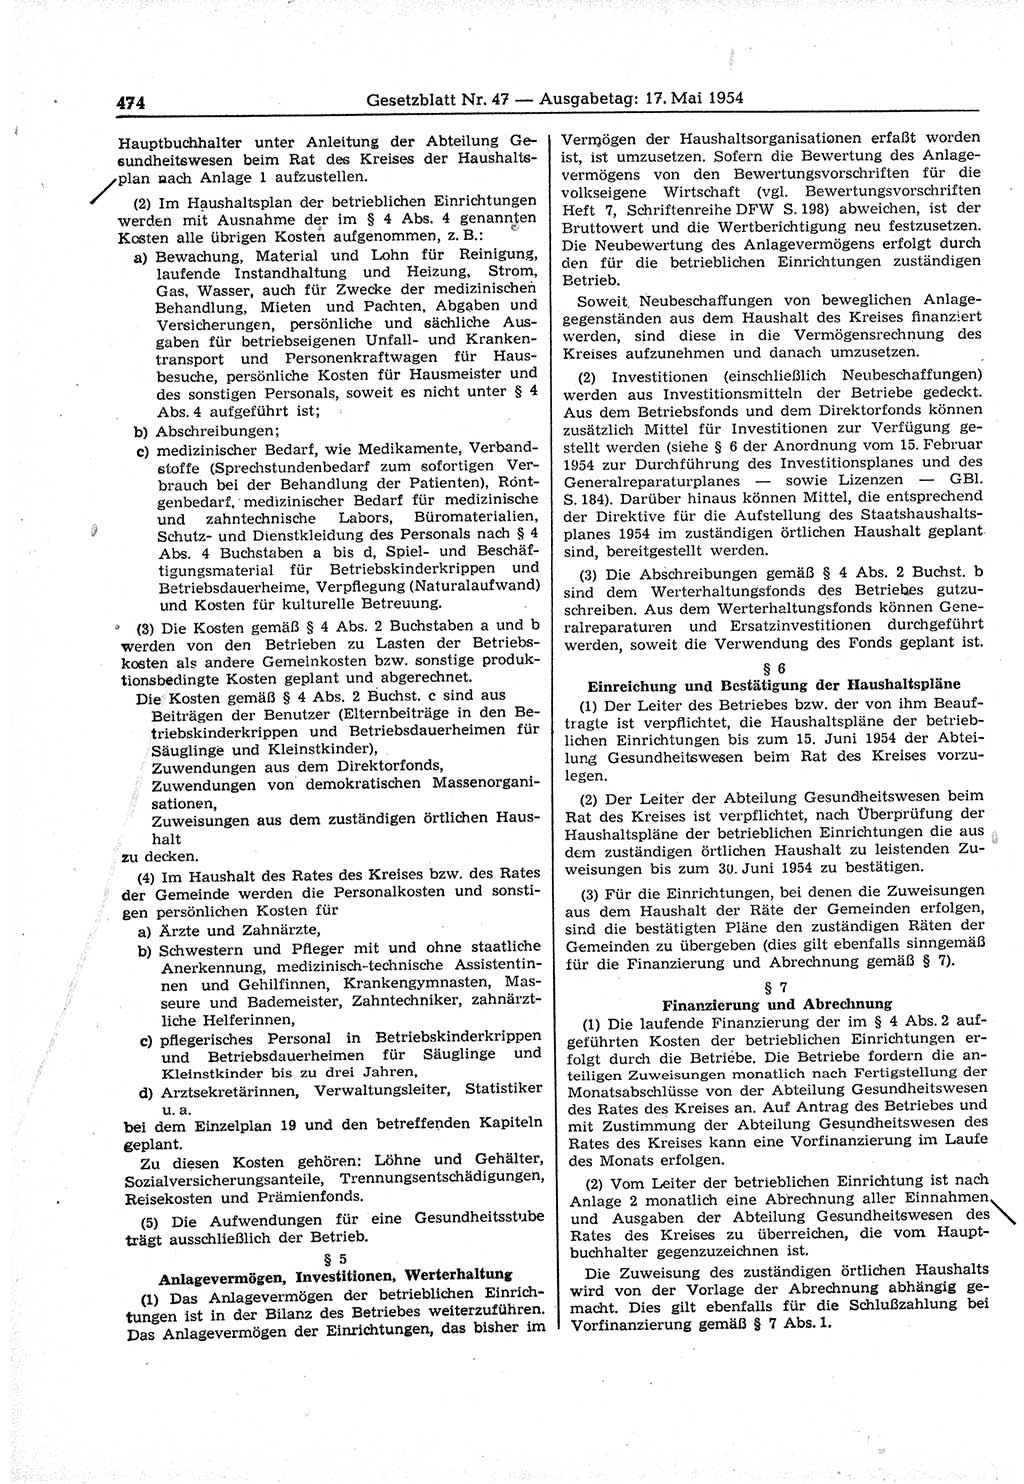 Gesetzblatt (GBl.) der Deutschen Demokratischen Republik (DDR) 1954, Seite 474 (GBl. DDR 1954, S. 474)